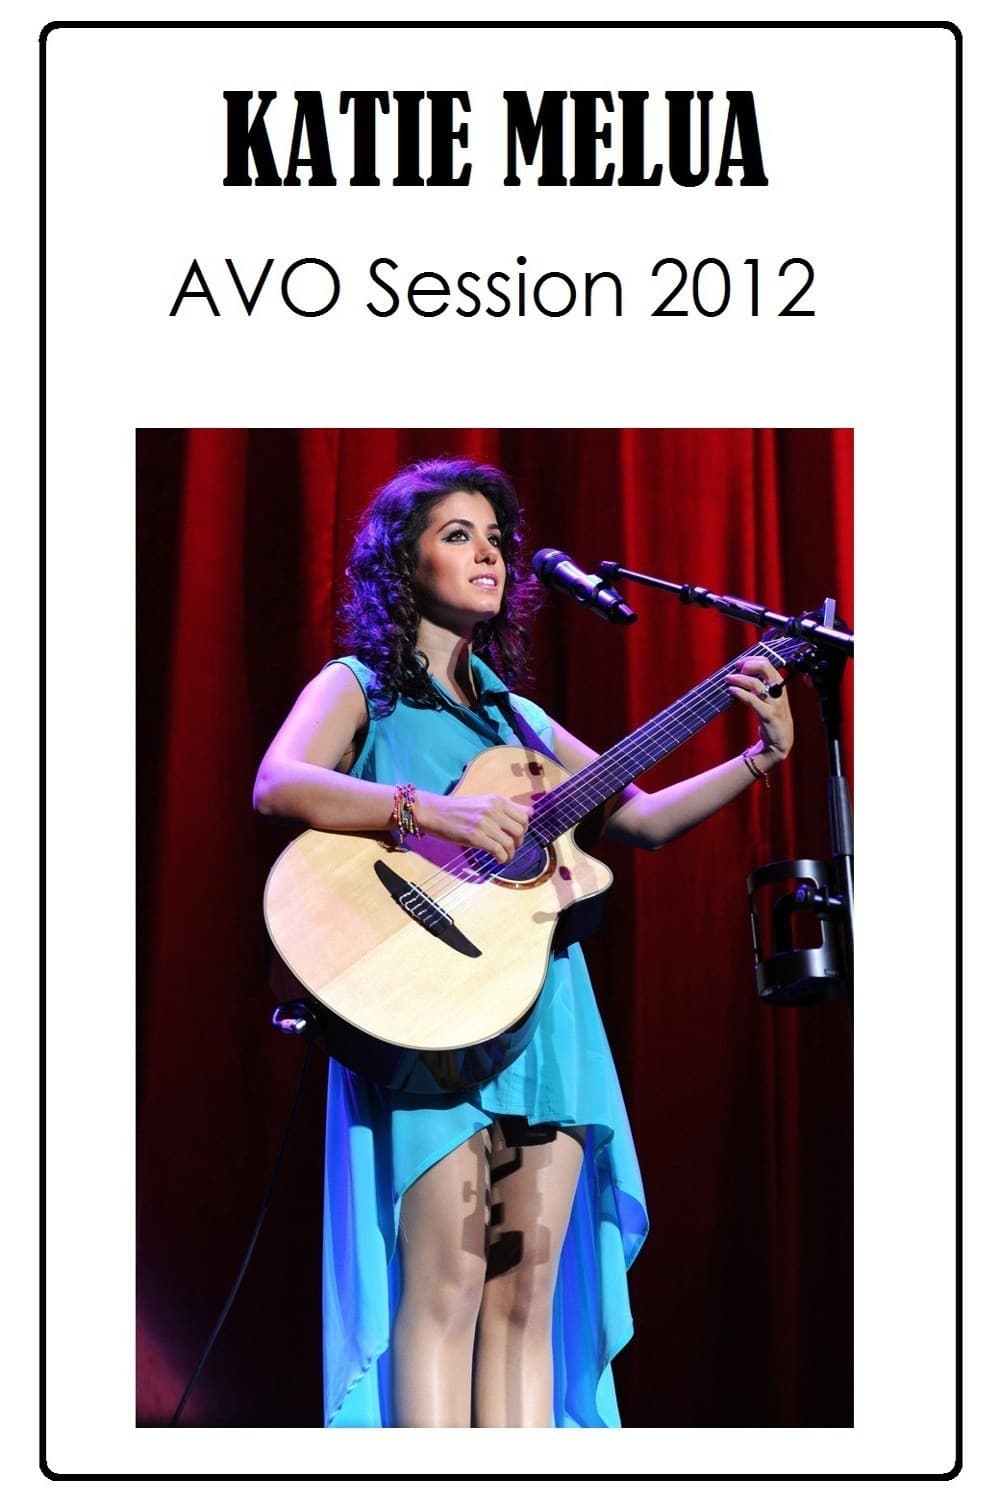 Katie Melua - Avo Session Basel